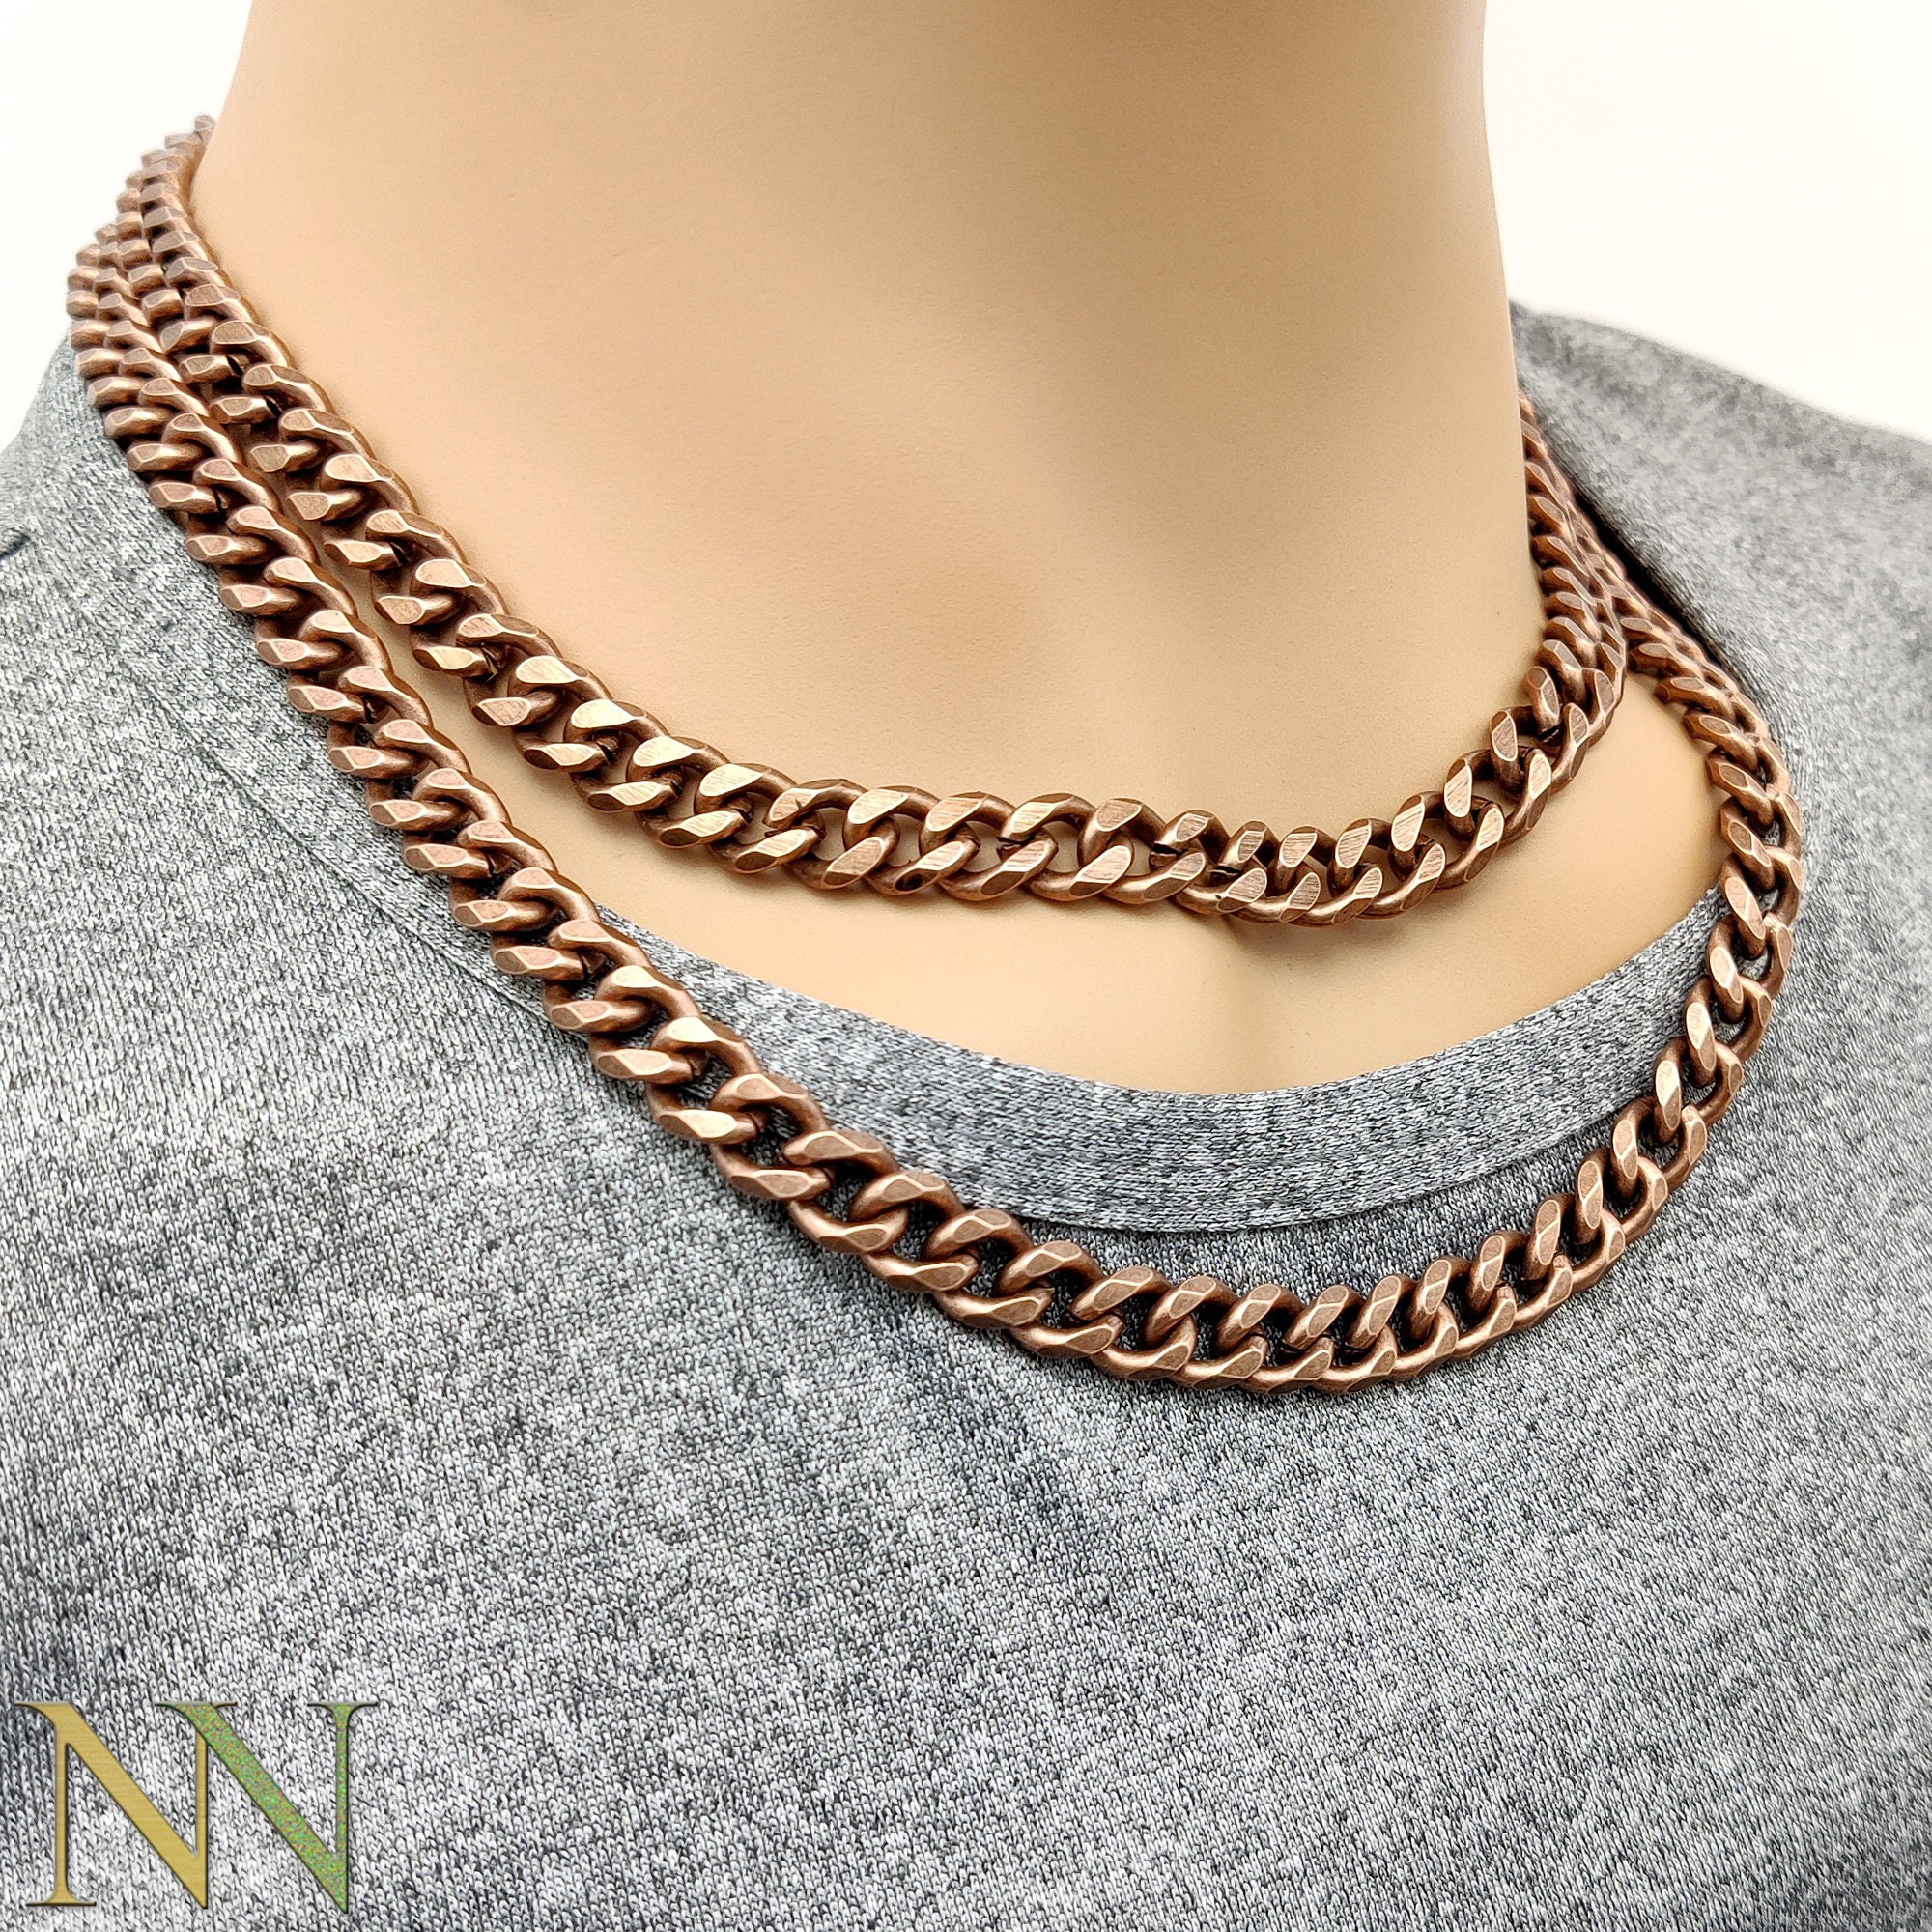 Antique Copper Necklaces for Men Women Big Cuban Link - Etsy